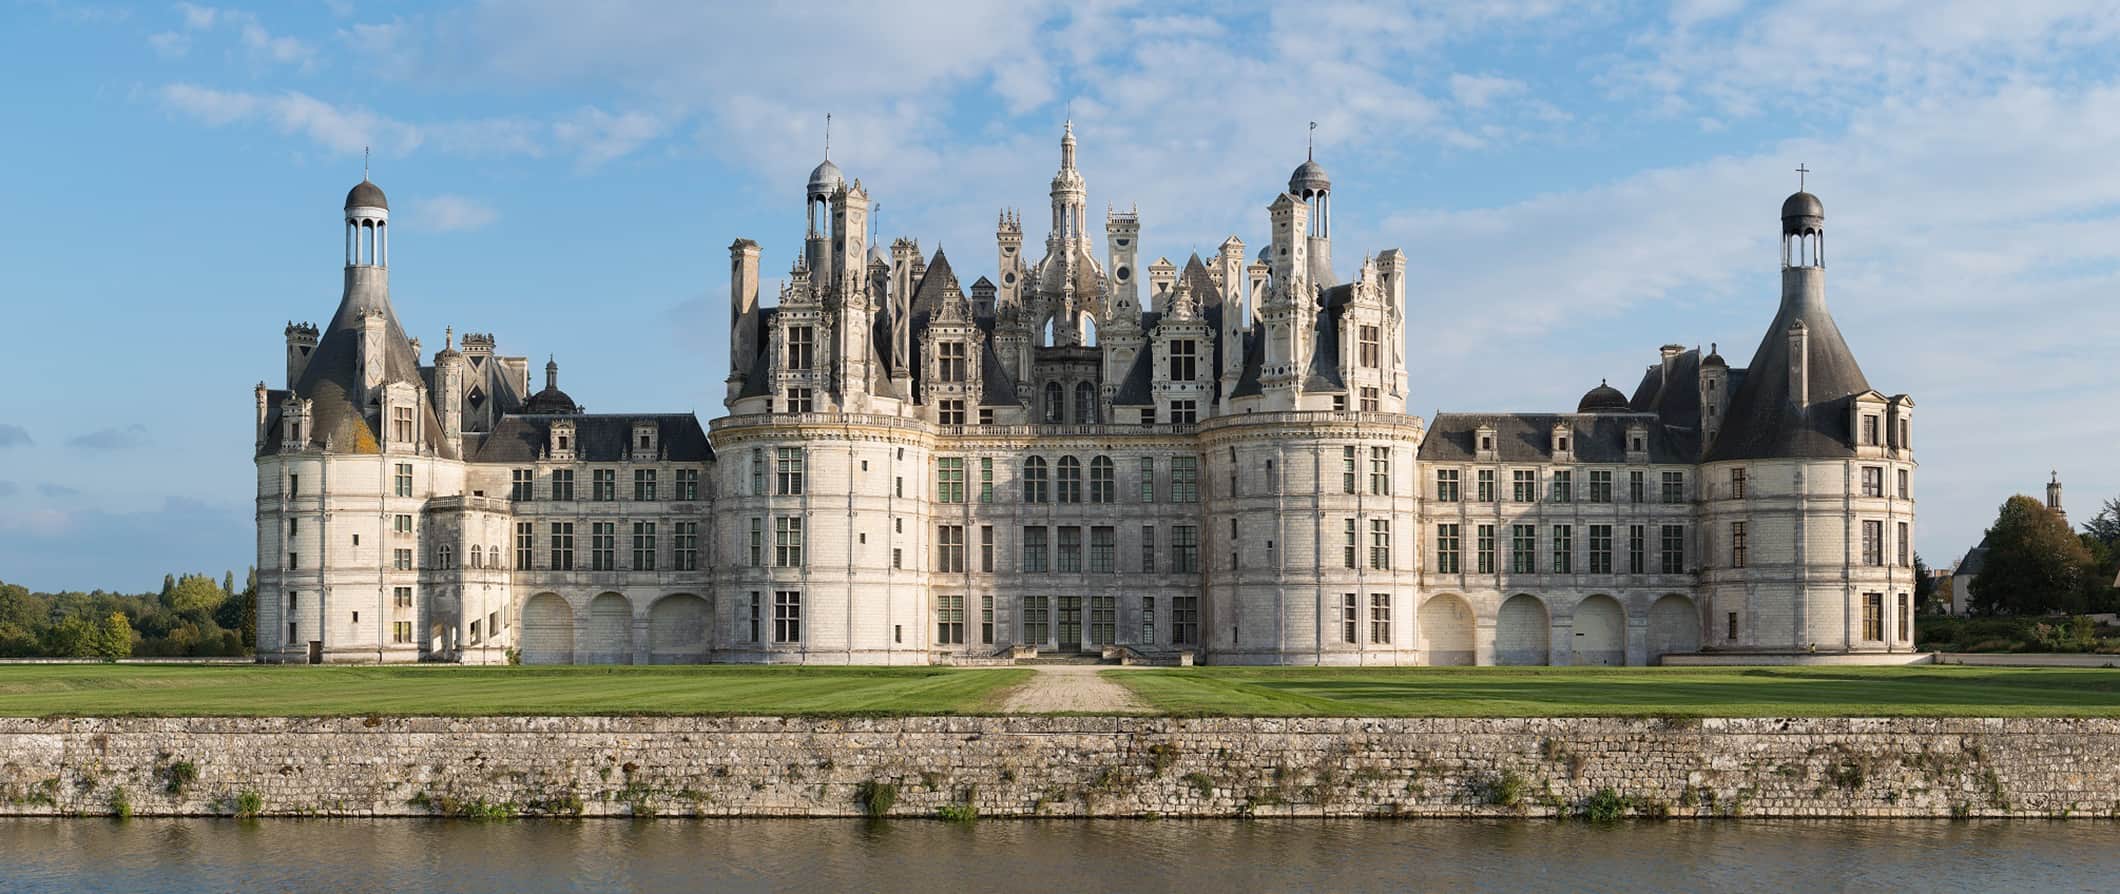 Enorme castelo francês histórico no vale do Loire, cercado por grama e ervas